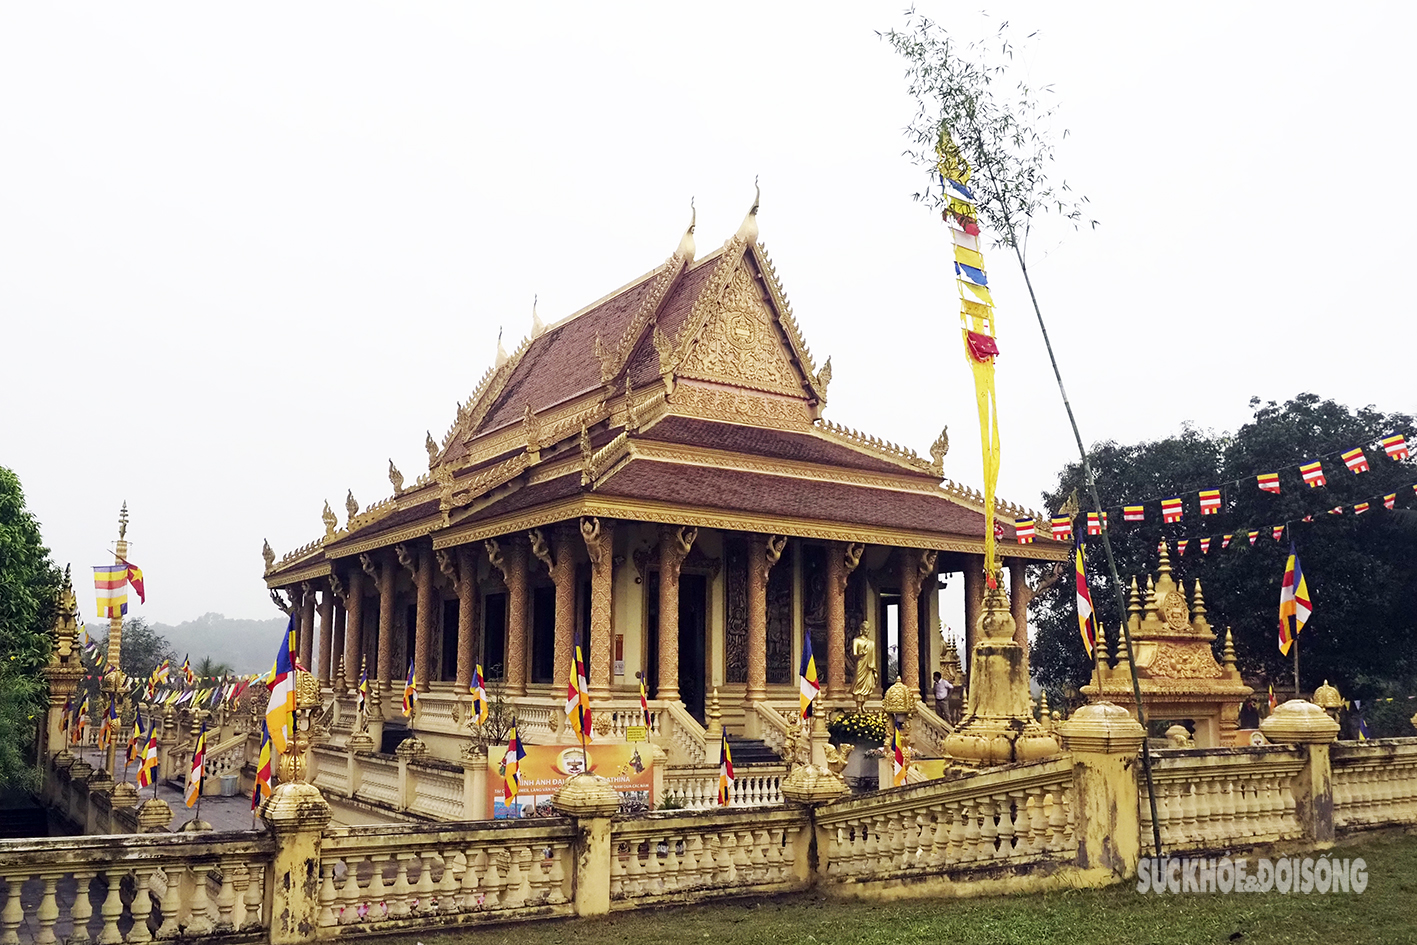 Ấn tượng ngôi chùa Khmer giữa Thủ đô Hà Nội - Ảnh 5.